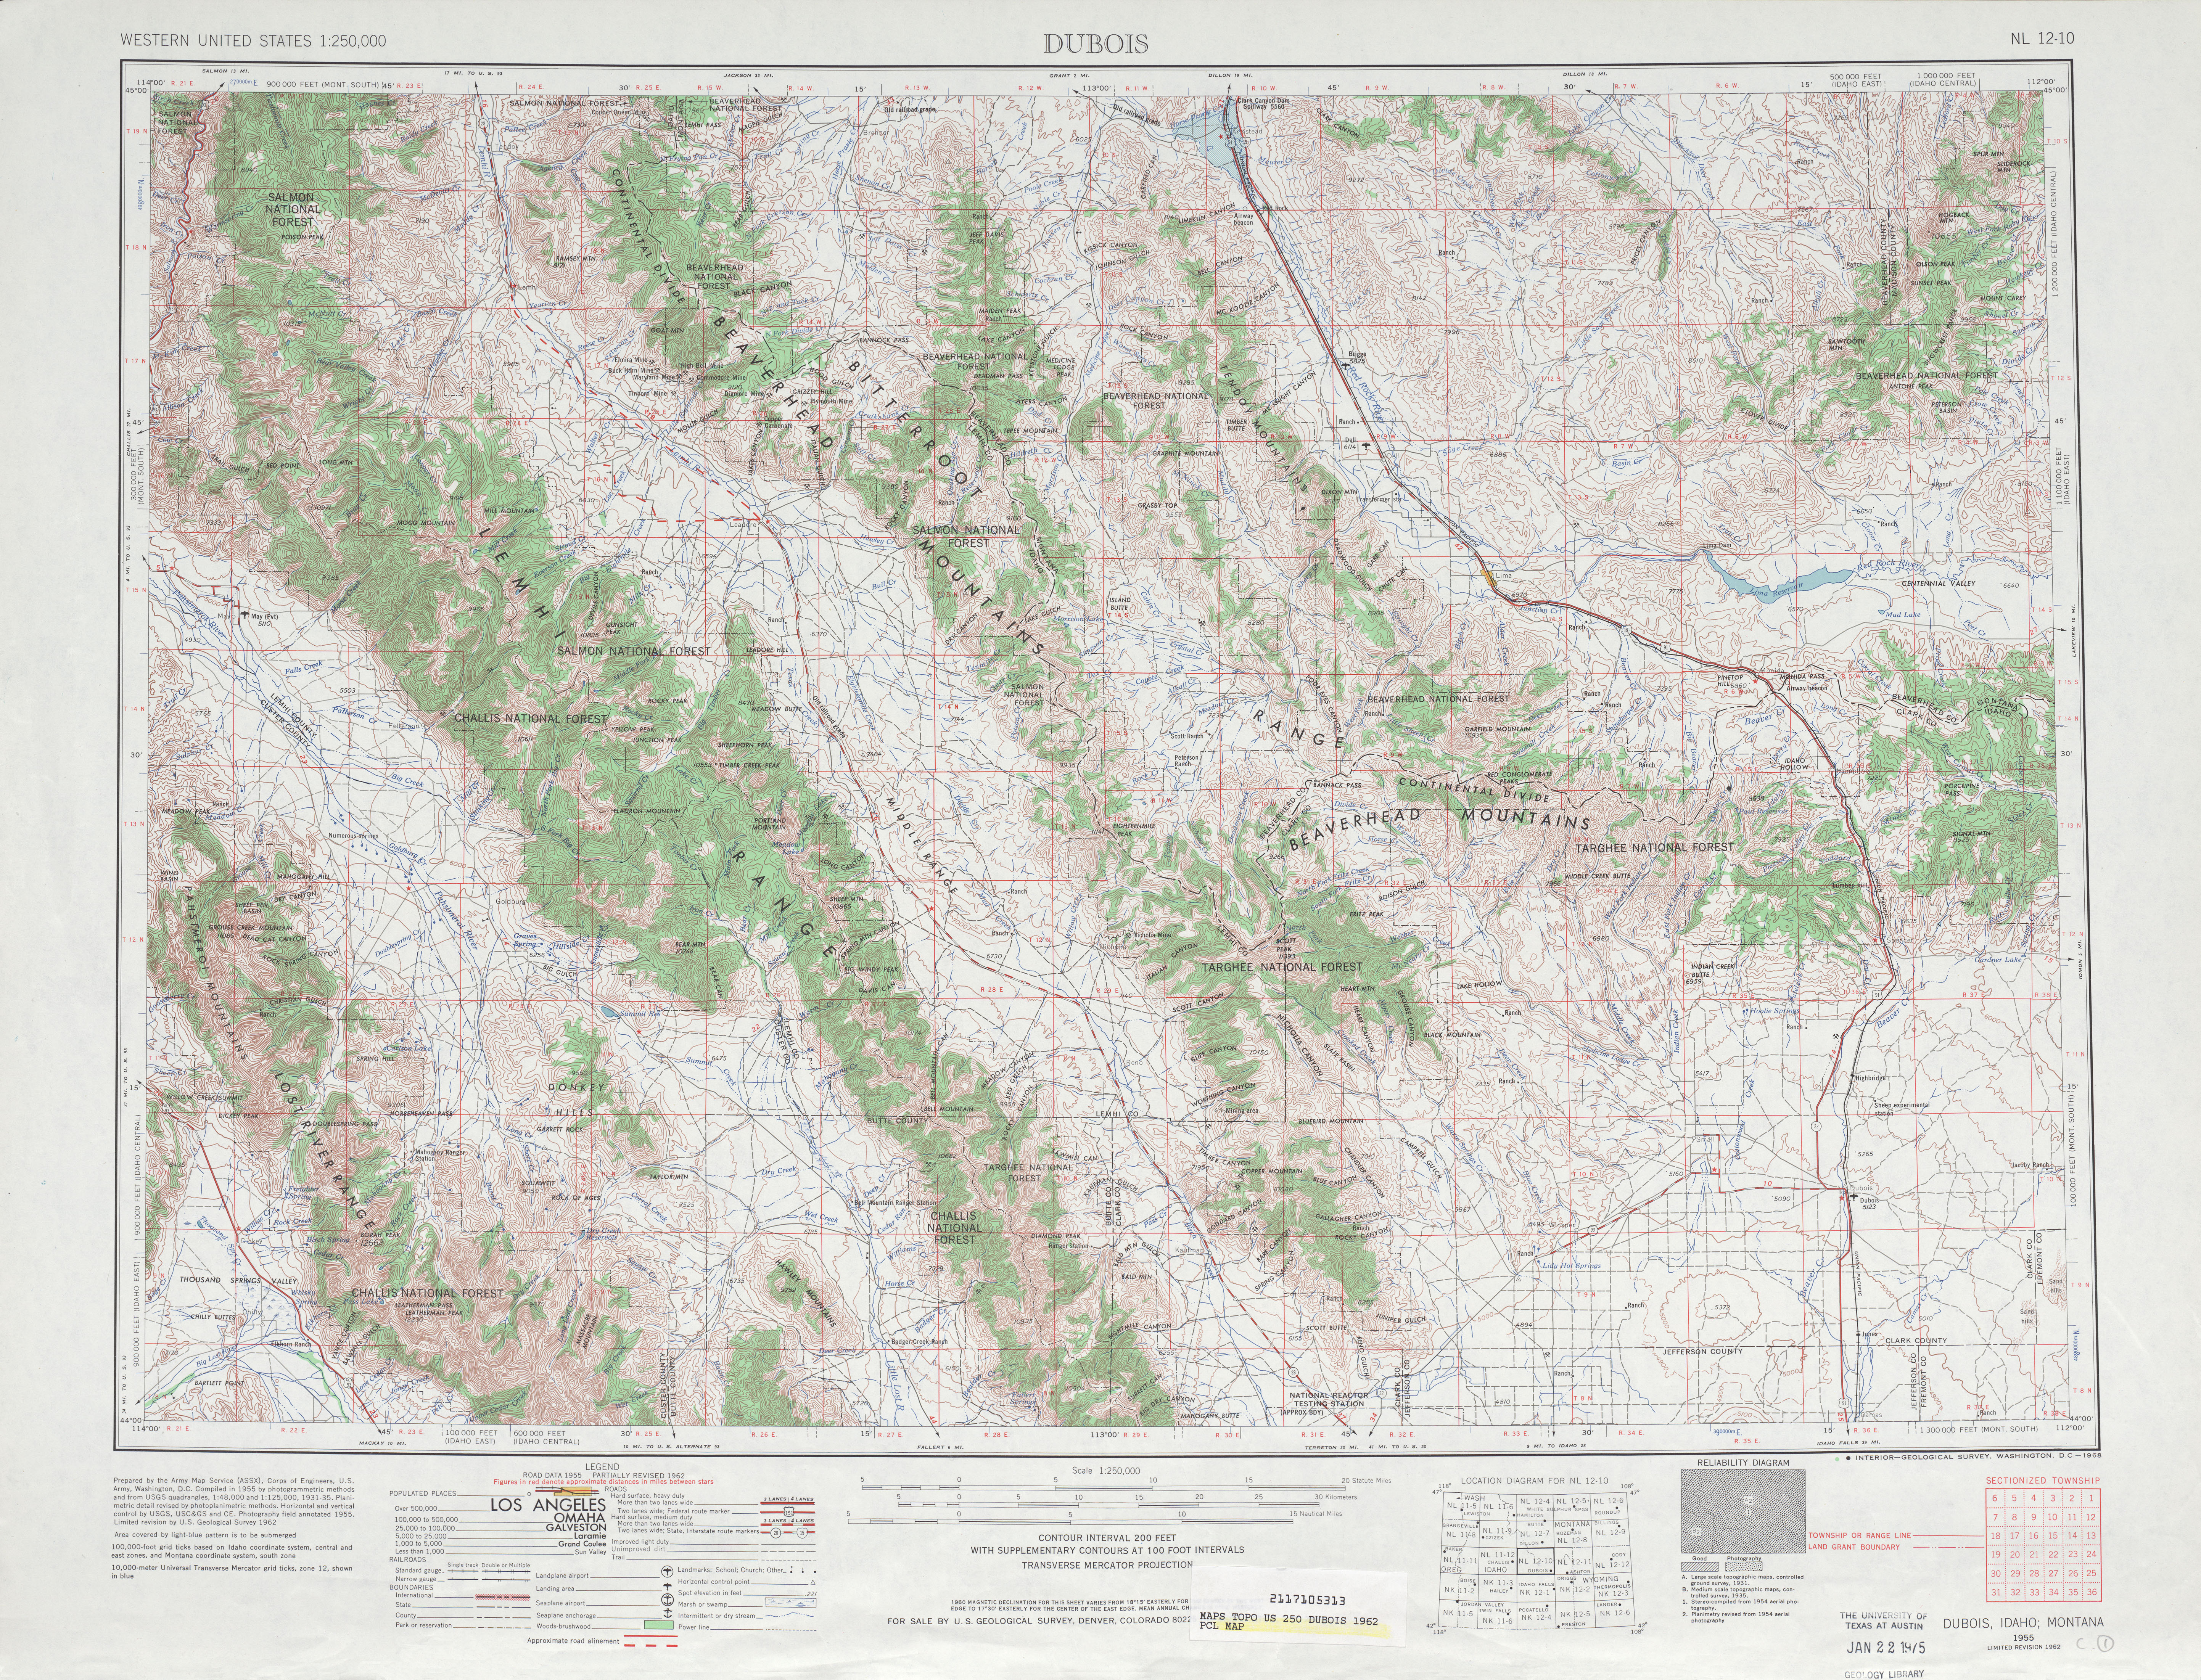 Hoja Dubois del Mapa Topográfico de los Estados Unidos 1962